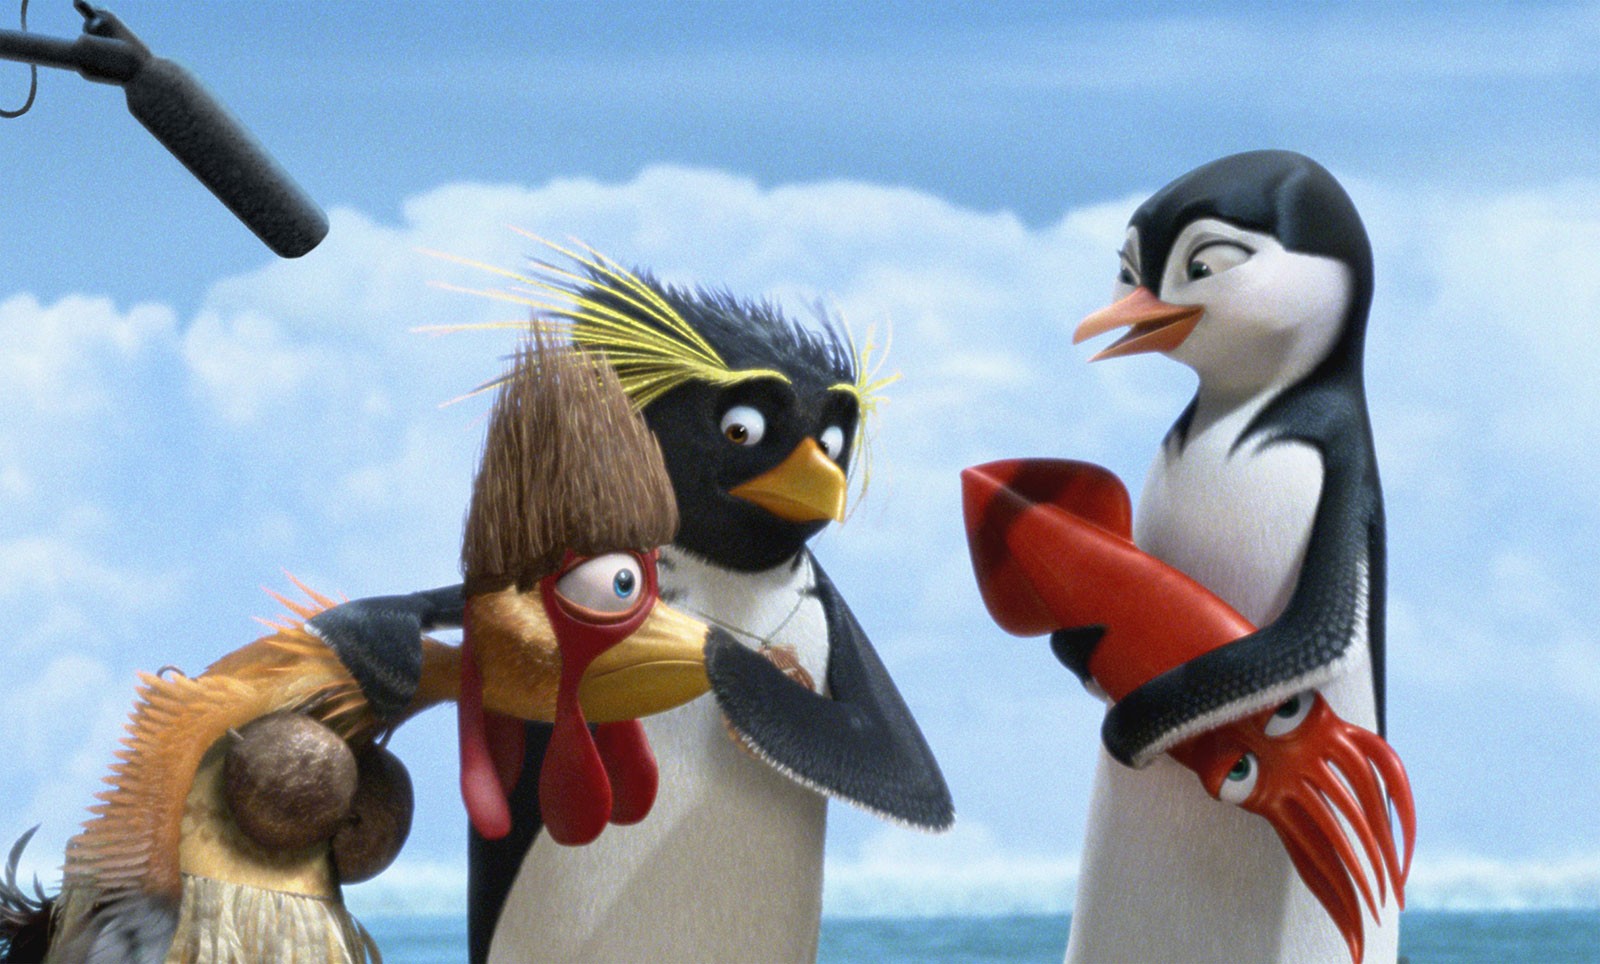 мультфильмы о пингвинах